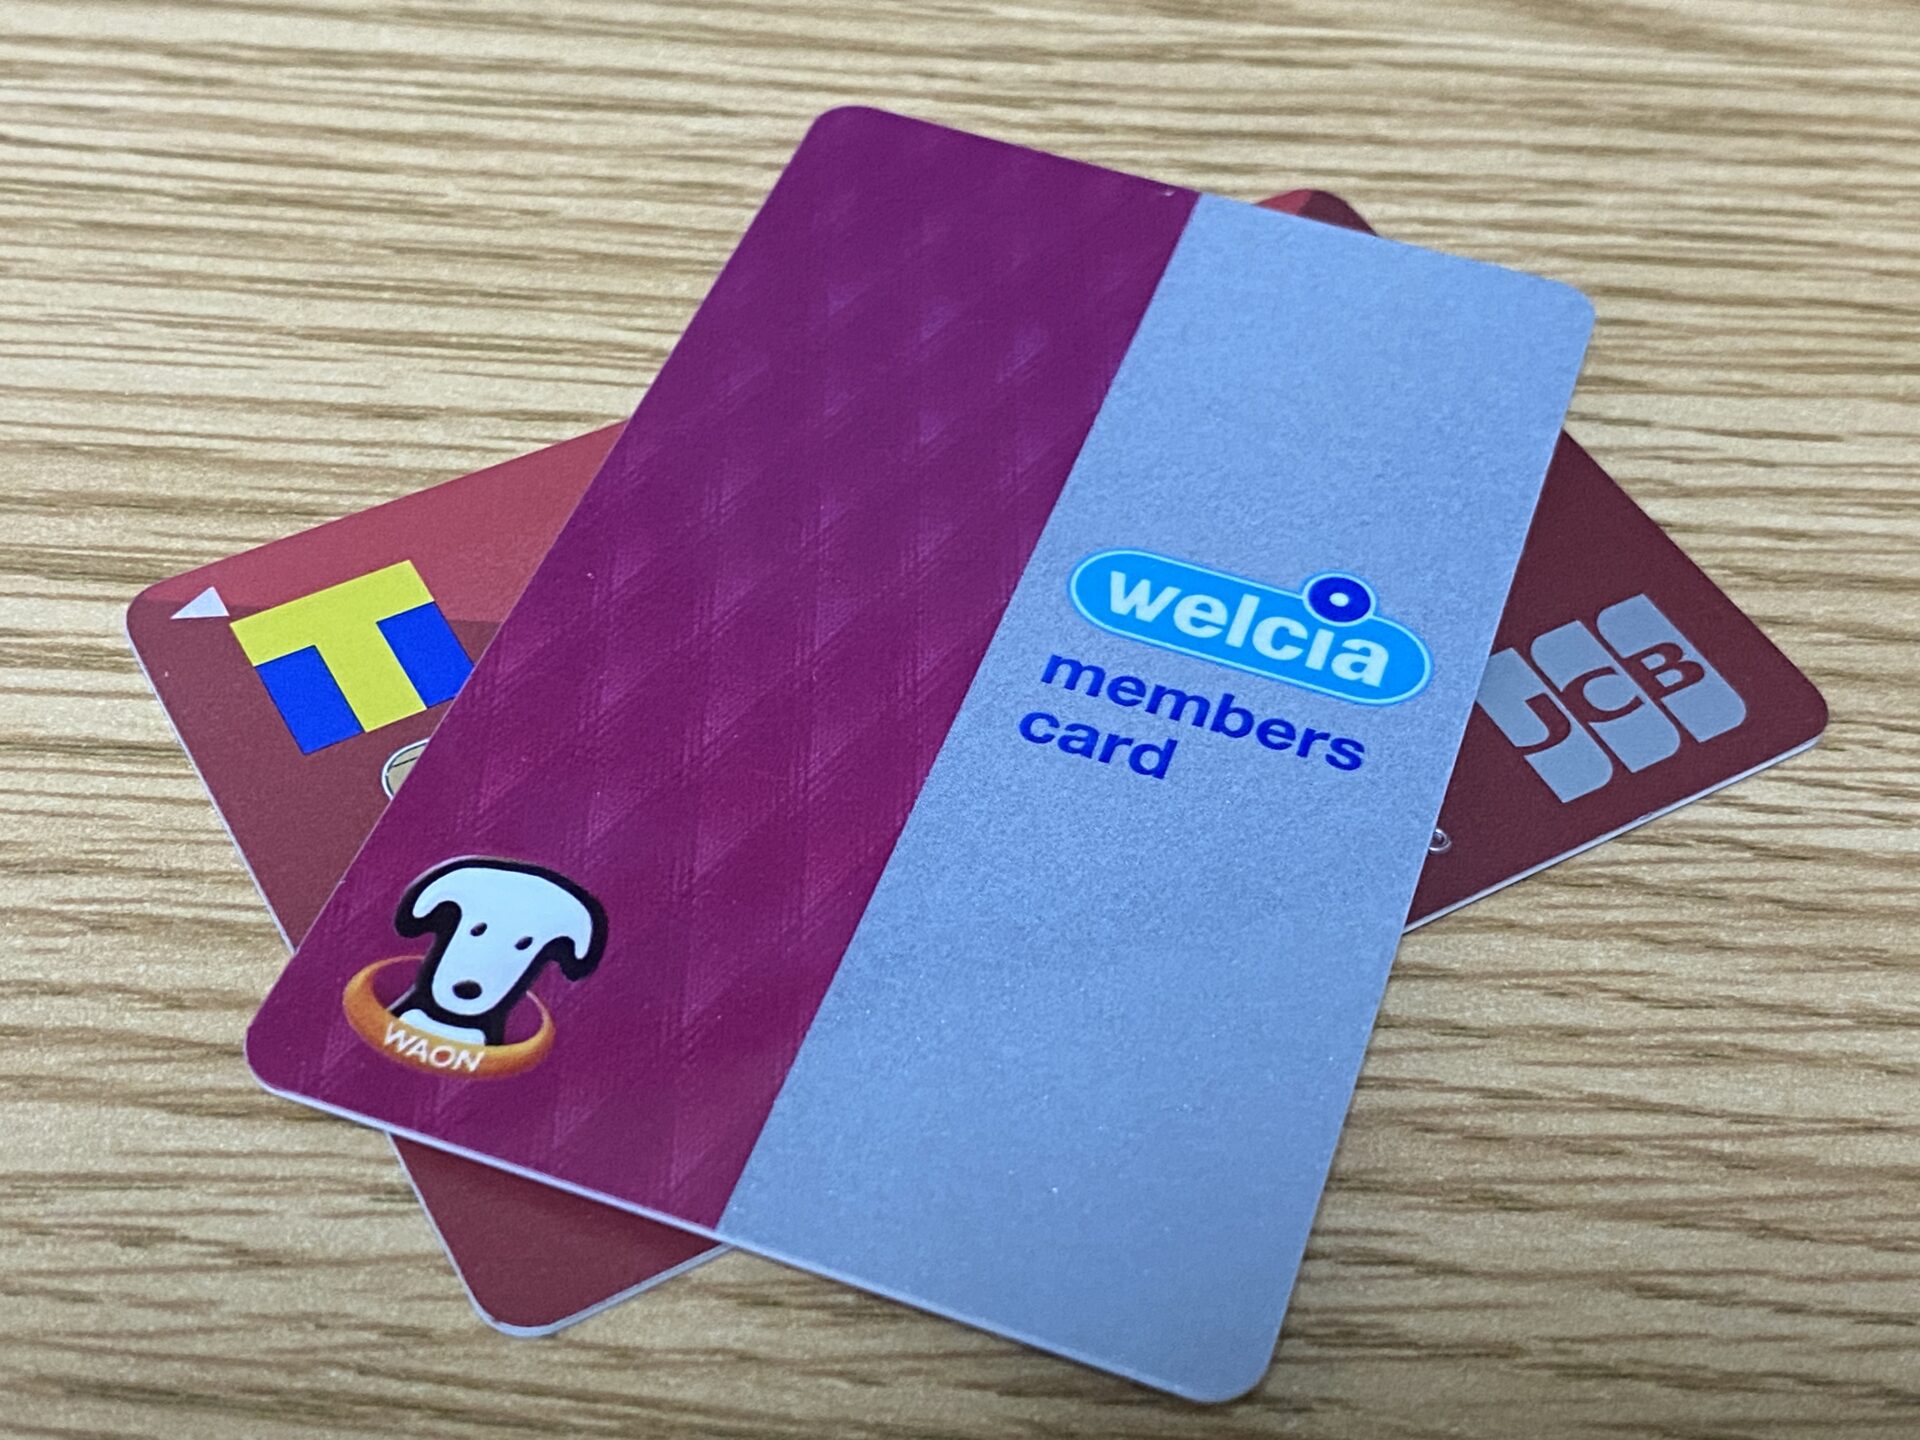 TポイントカードとWAON POINTカード。ウエルシアグループで両方のポイントが貯まる